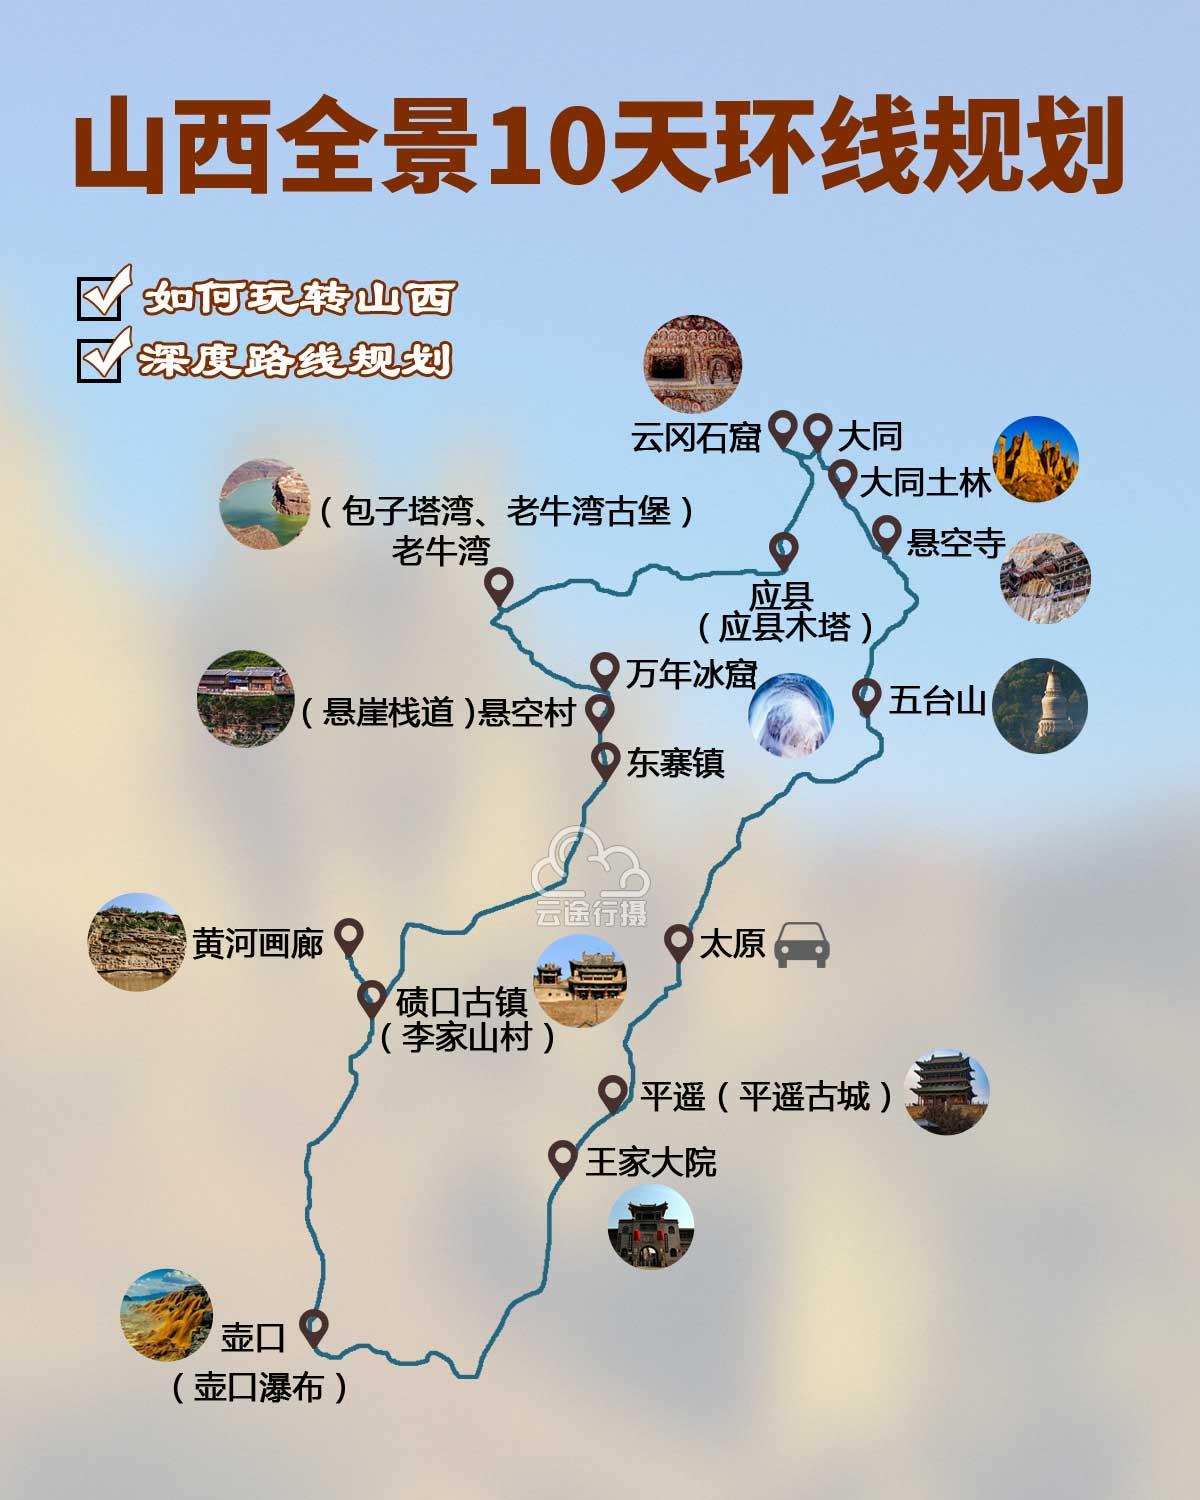 山西全景10天旅游攻略路线图(原创),山西自驾游规划